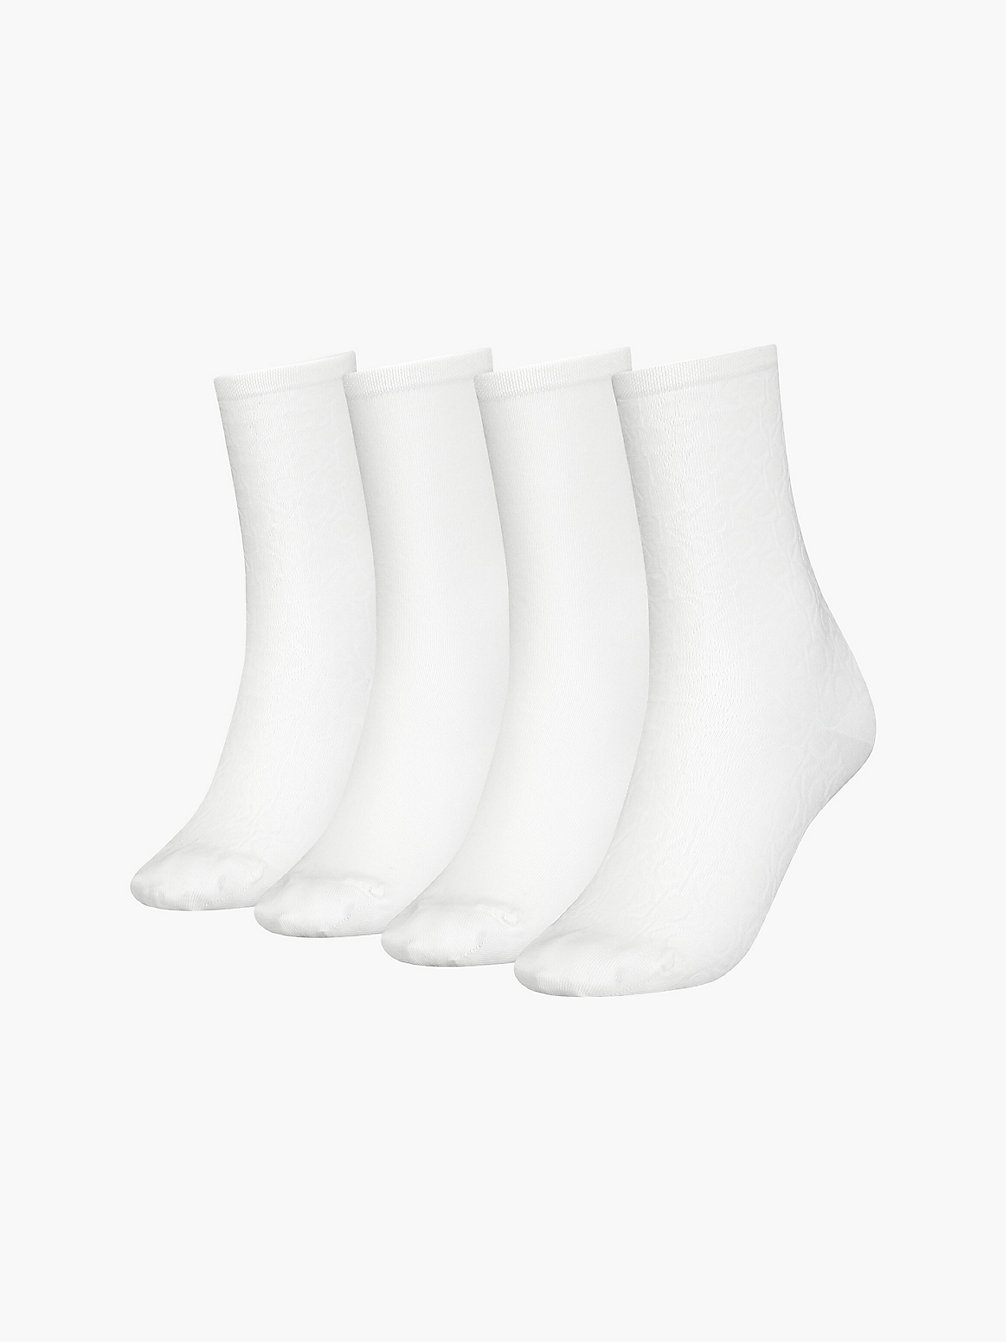 WHITE 4 Pack Crew Socks Gift Set undefined women Calvin Klein